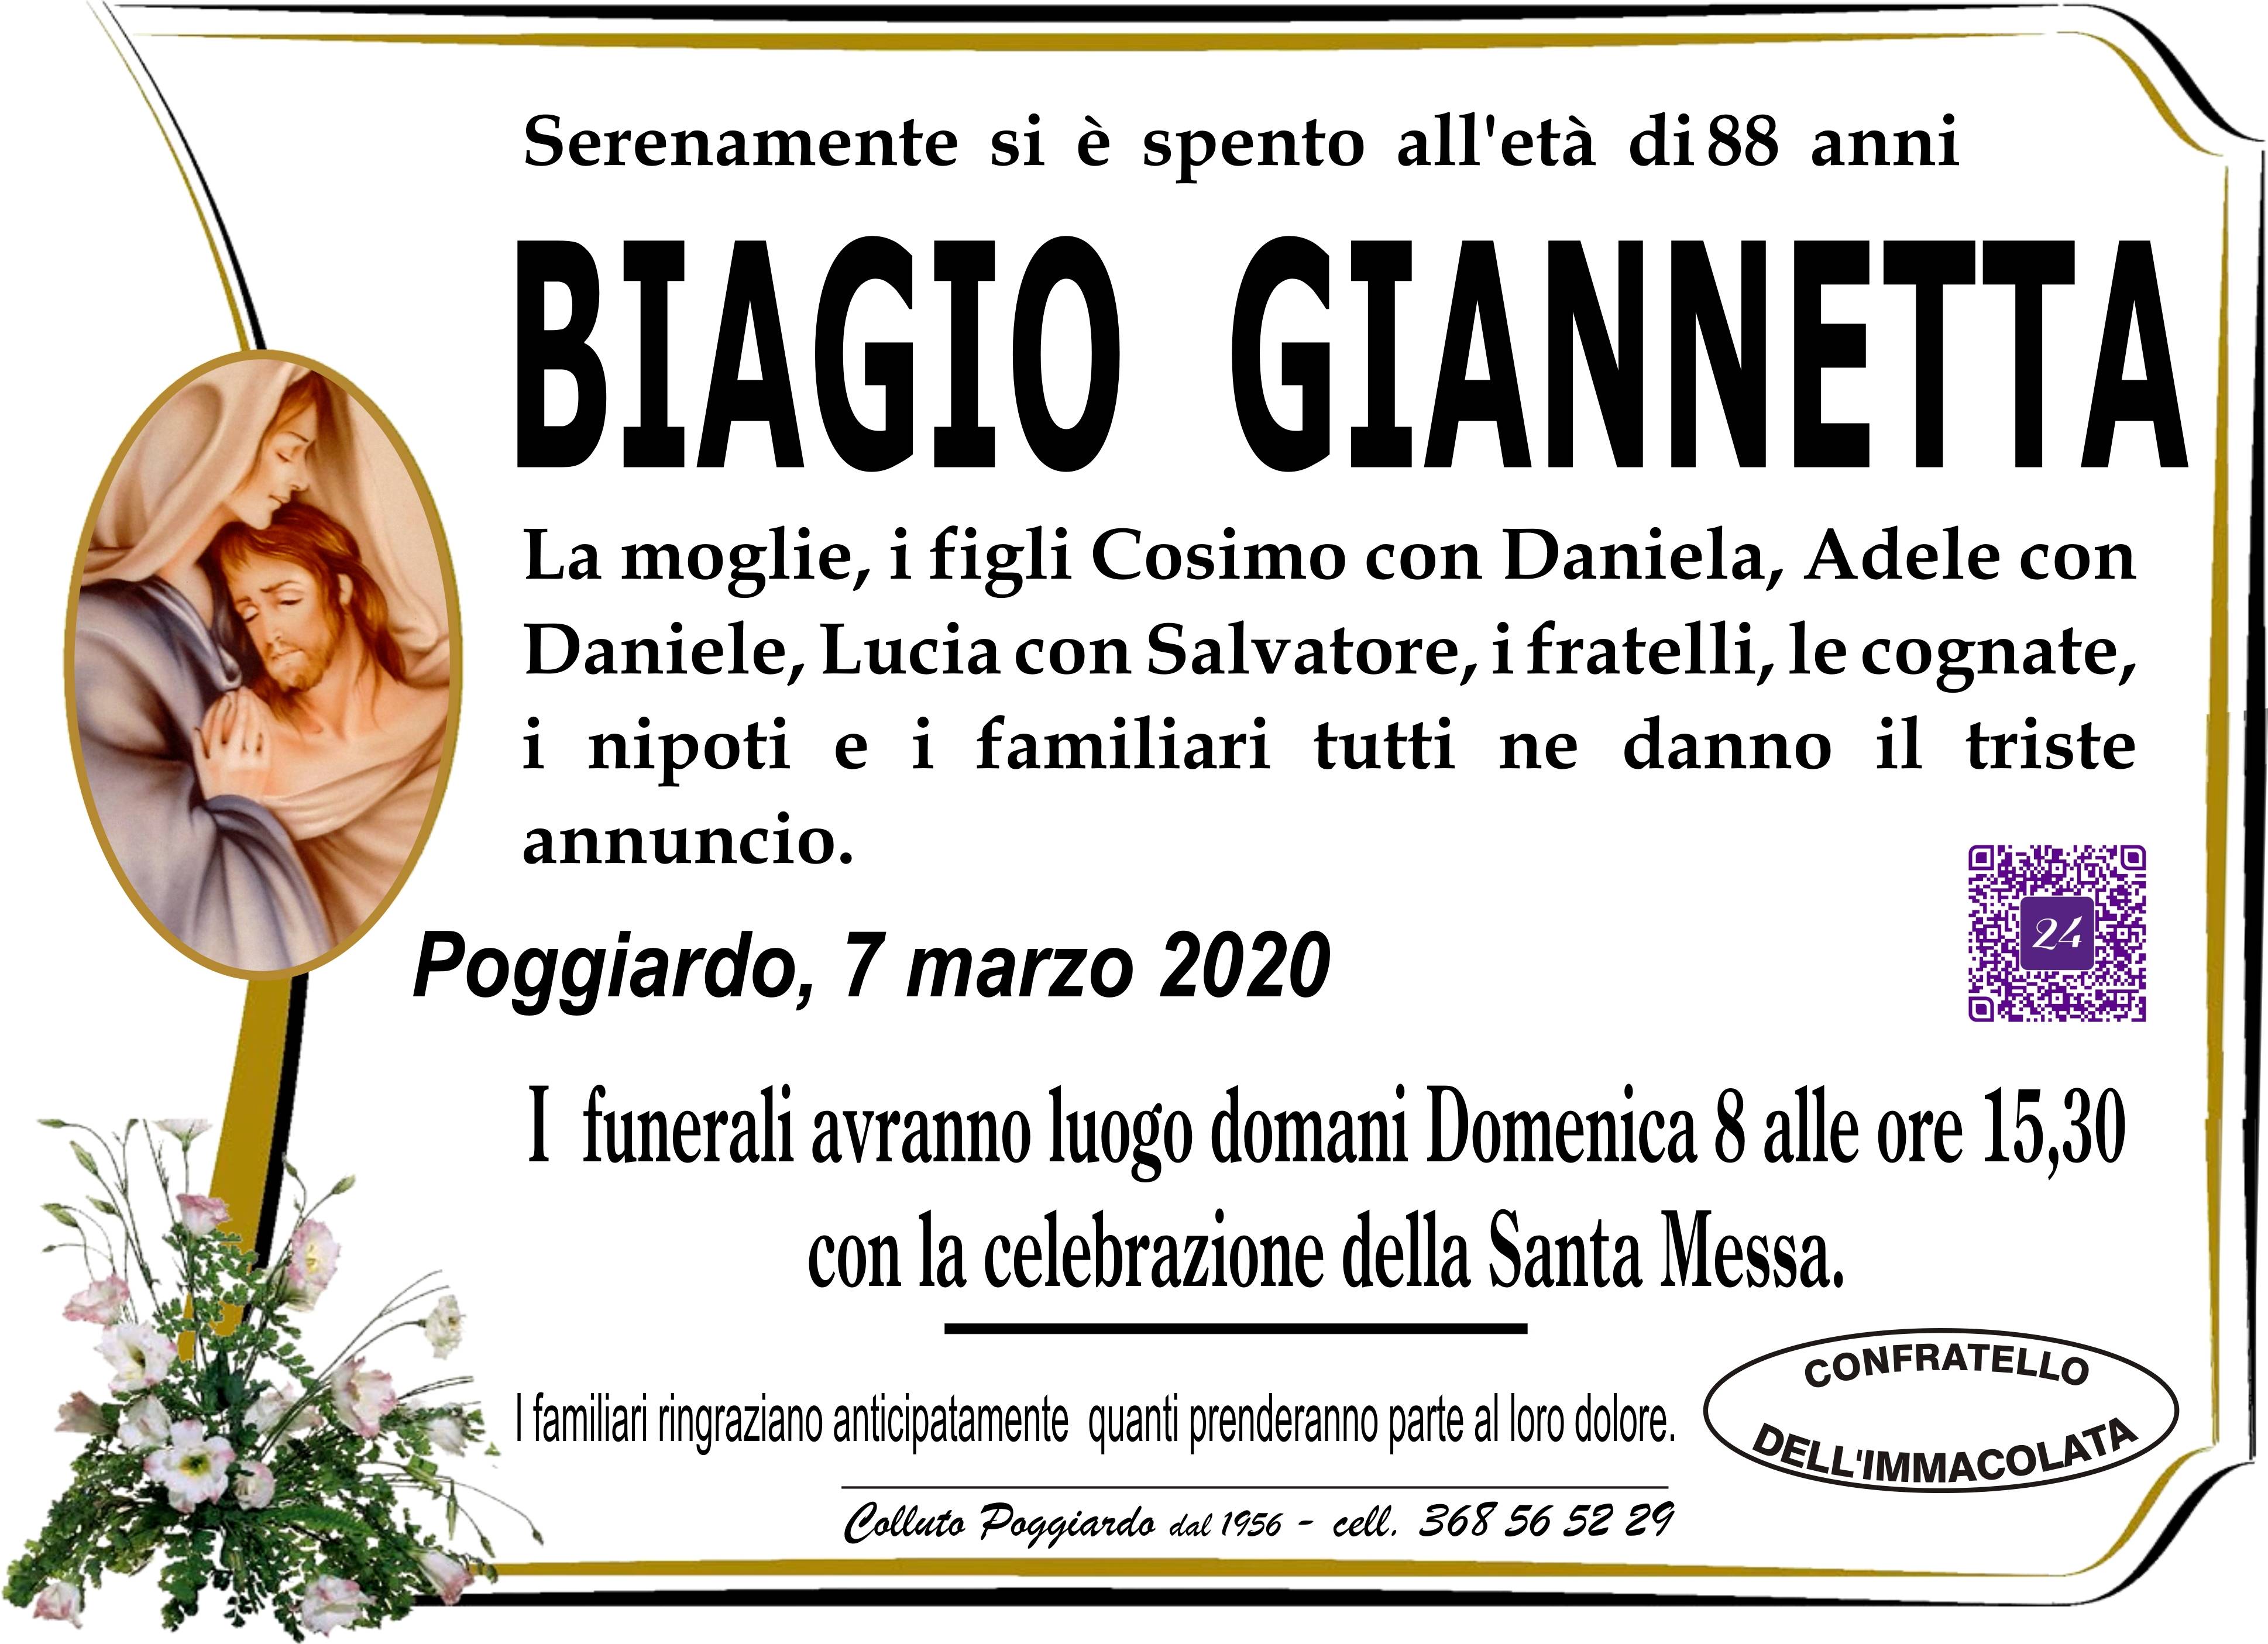 Biagio Giannetta